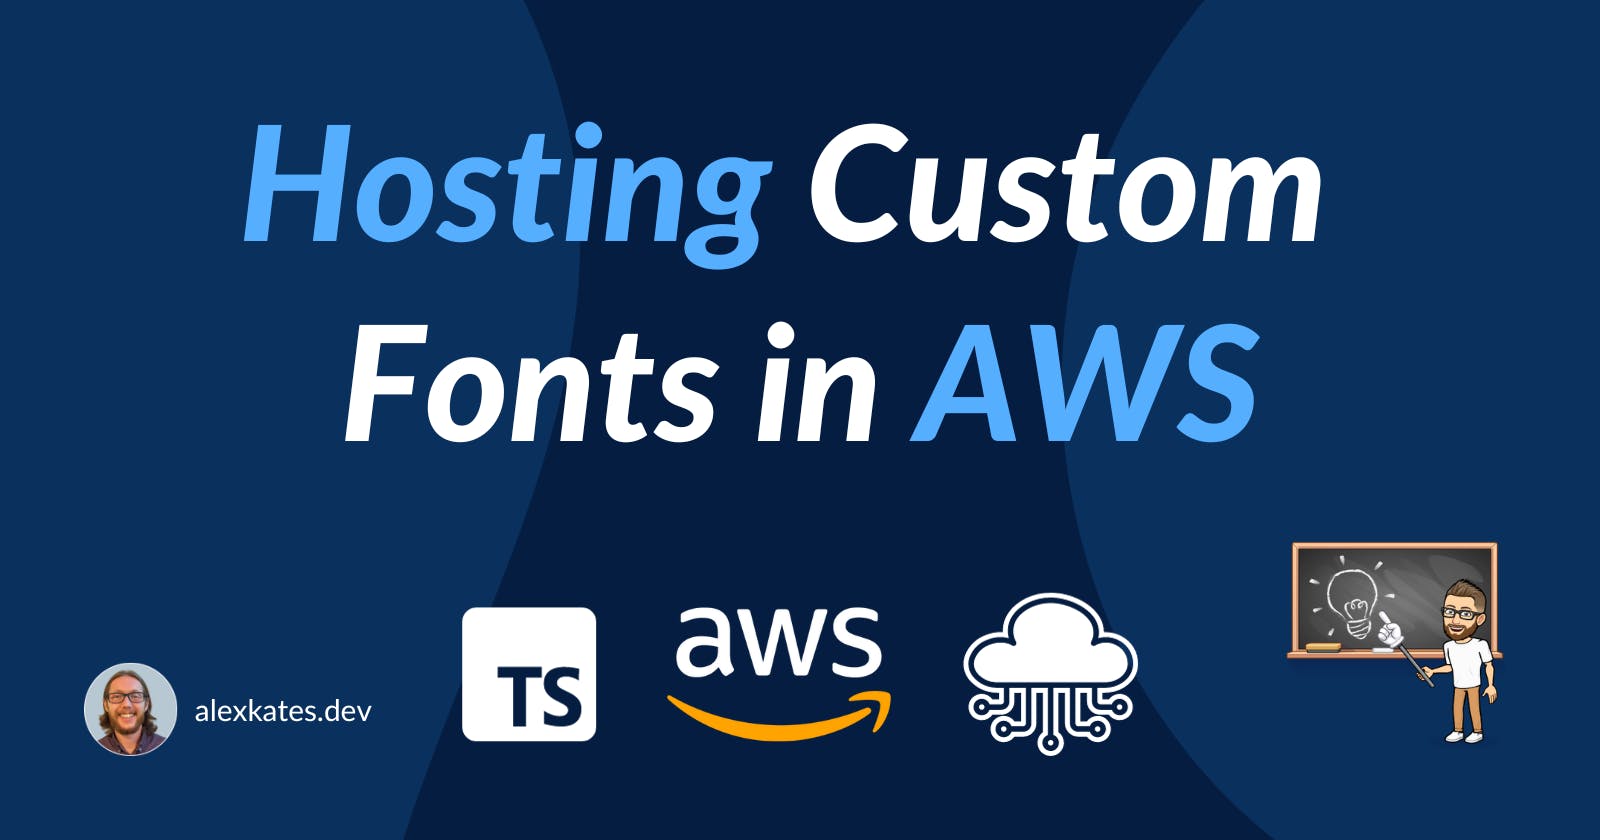 Hosting Custom Fonts in AWS